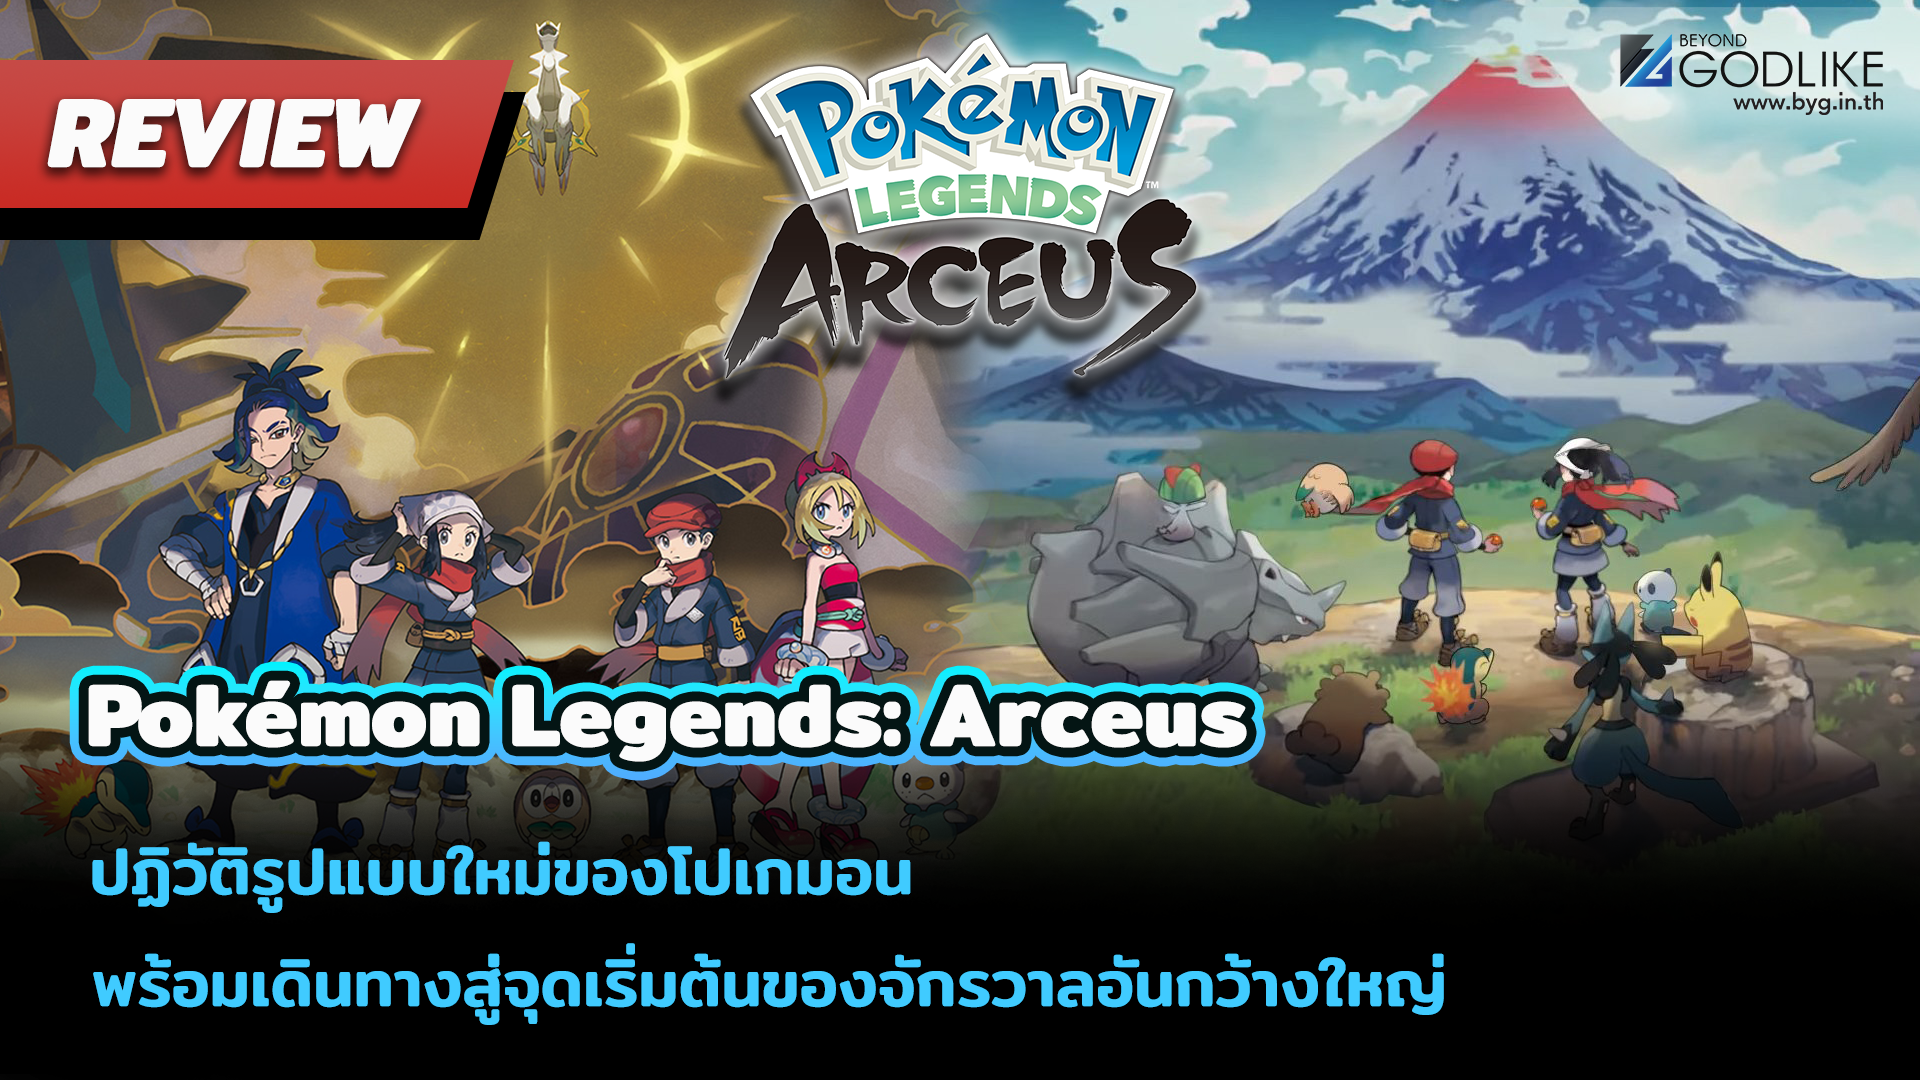 [Review] Pokémon Legends: Arceus ปฏิวัติรูปแบบใหม่ของโปเกมอน พร้อมเดินทางสู่จุดเริ่มต้นของจักรวาลอันกว้างใหญ่ 